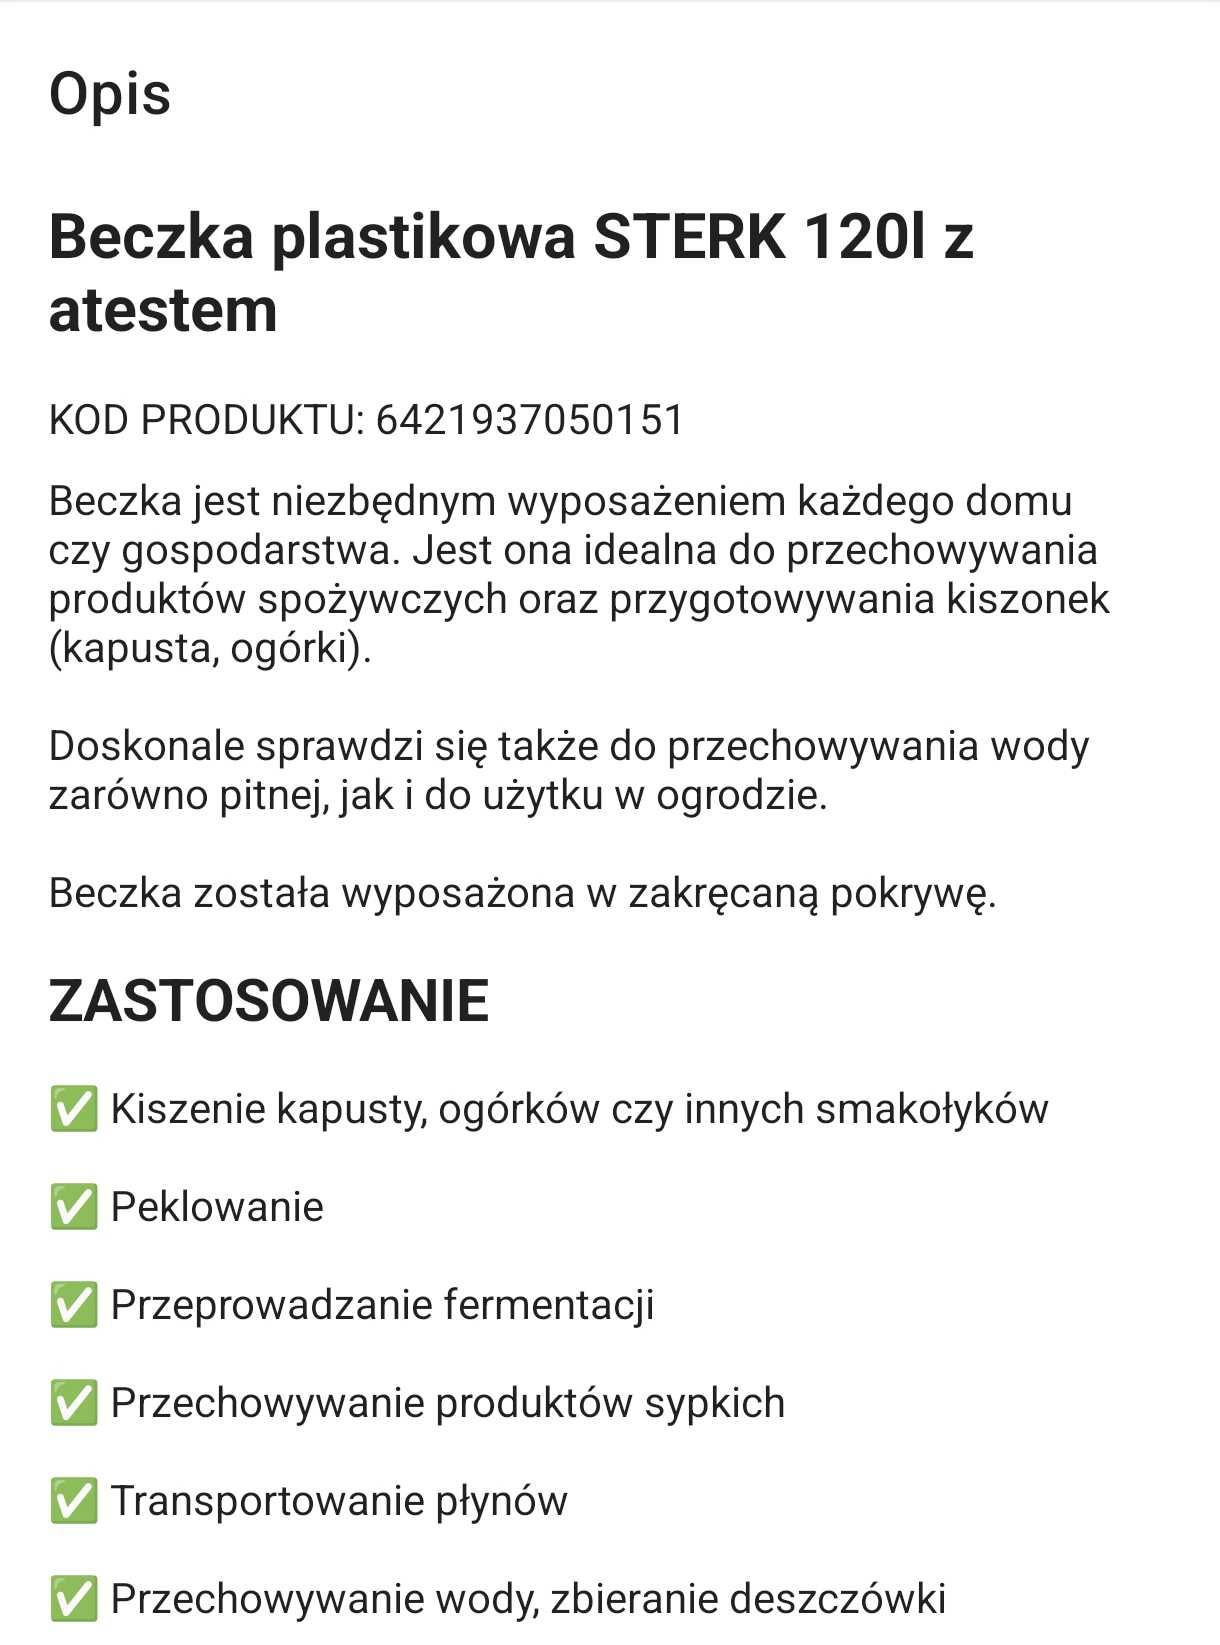 Beczka plastikowa STERK 120l z atestem